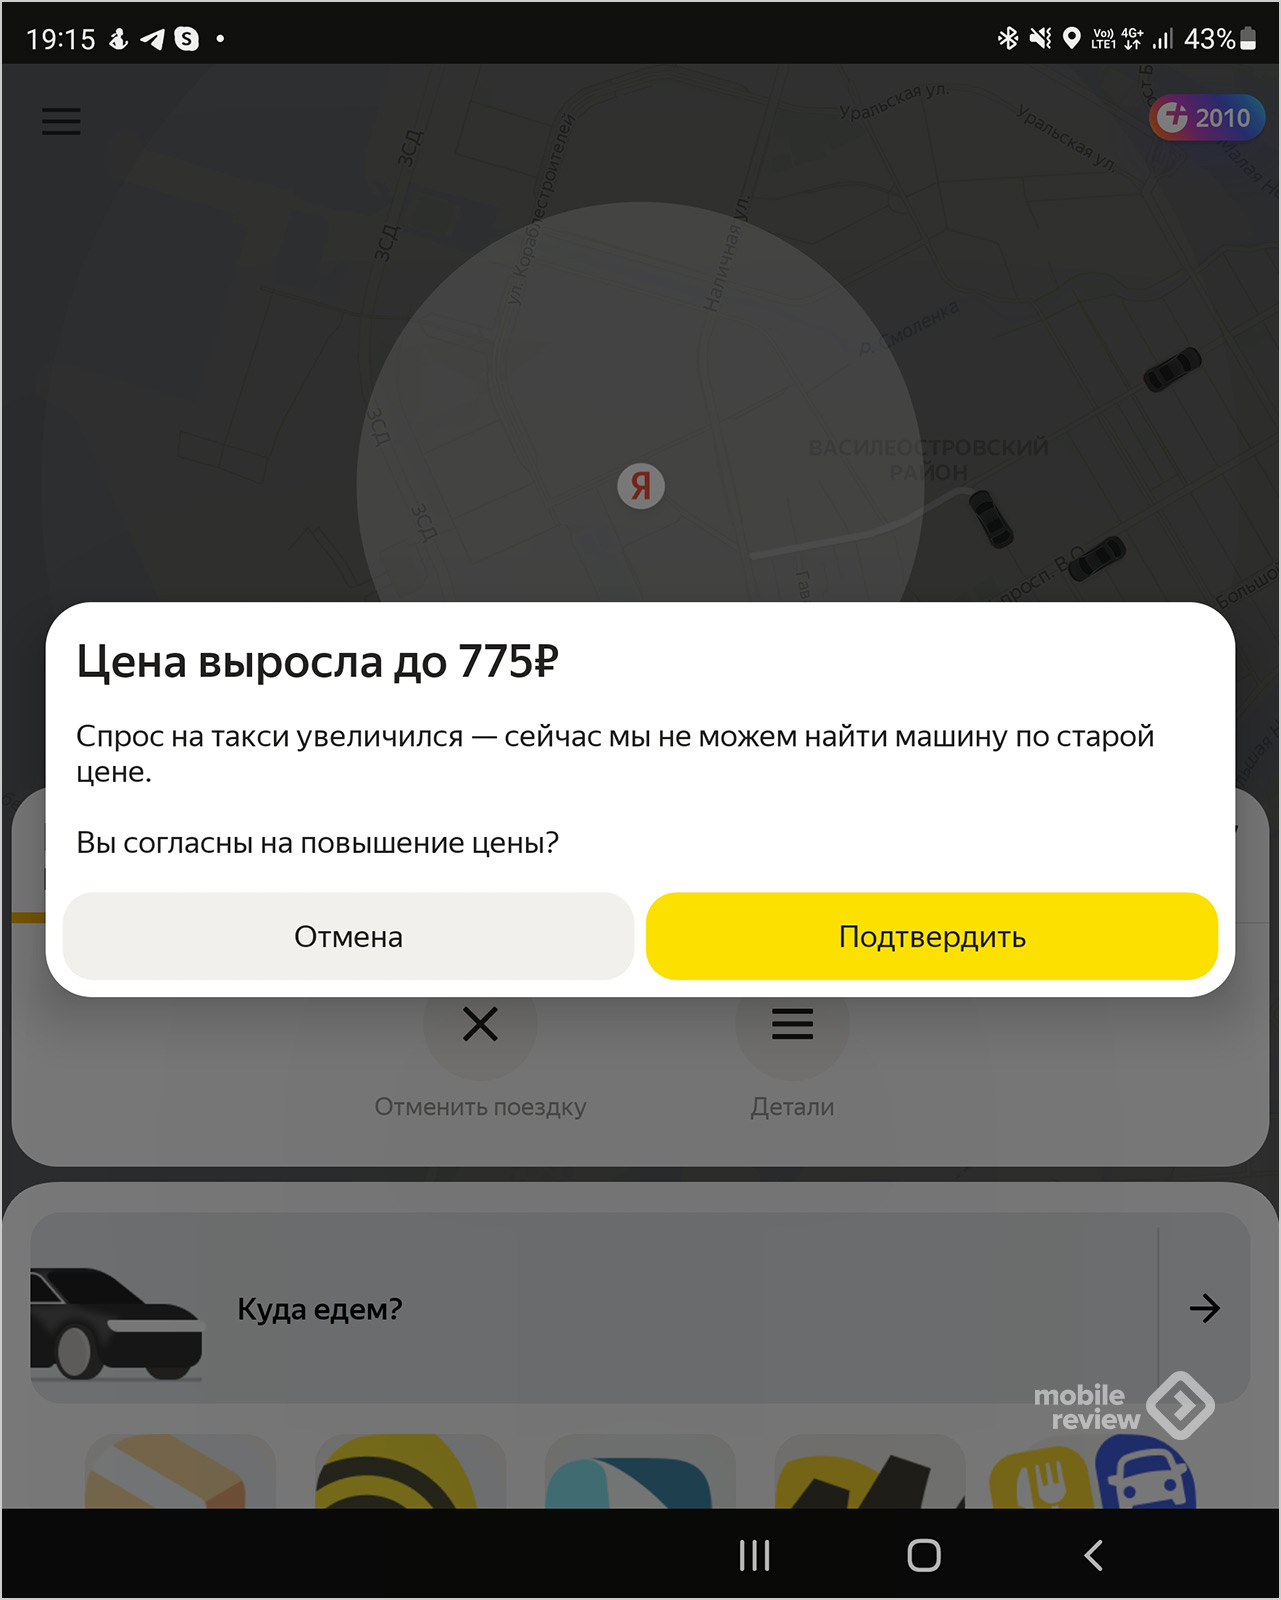 Ценообразование в «Яндекс.Такси» — обуем водителей и пассажиров!